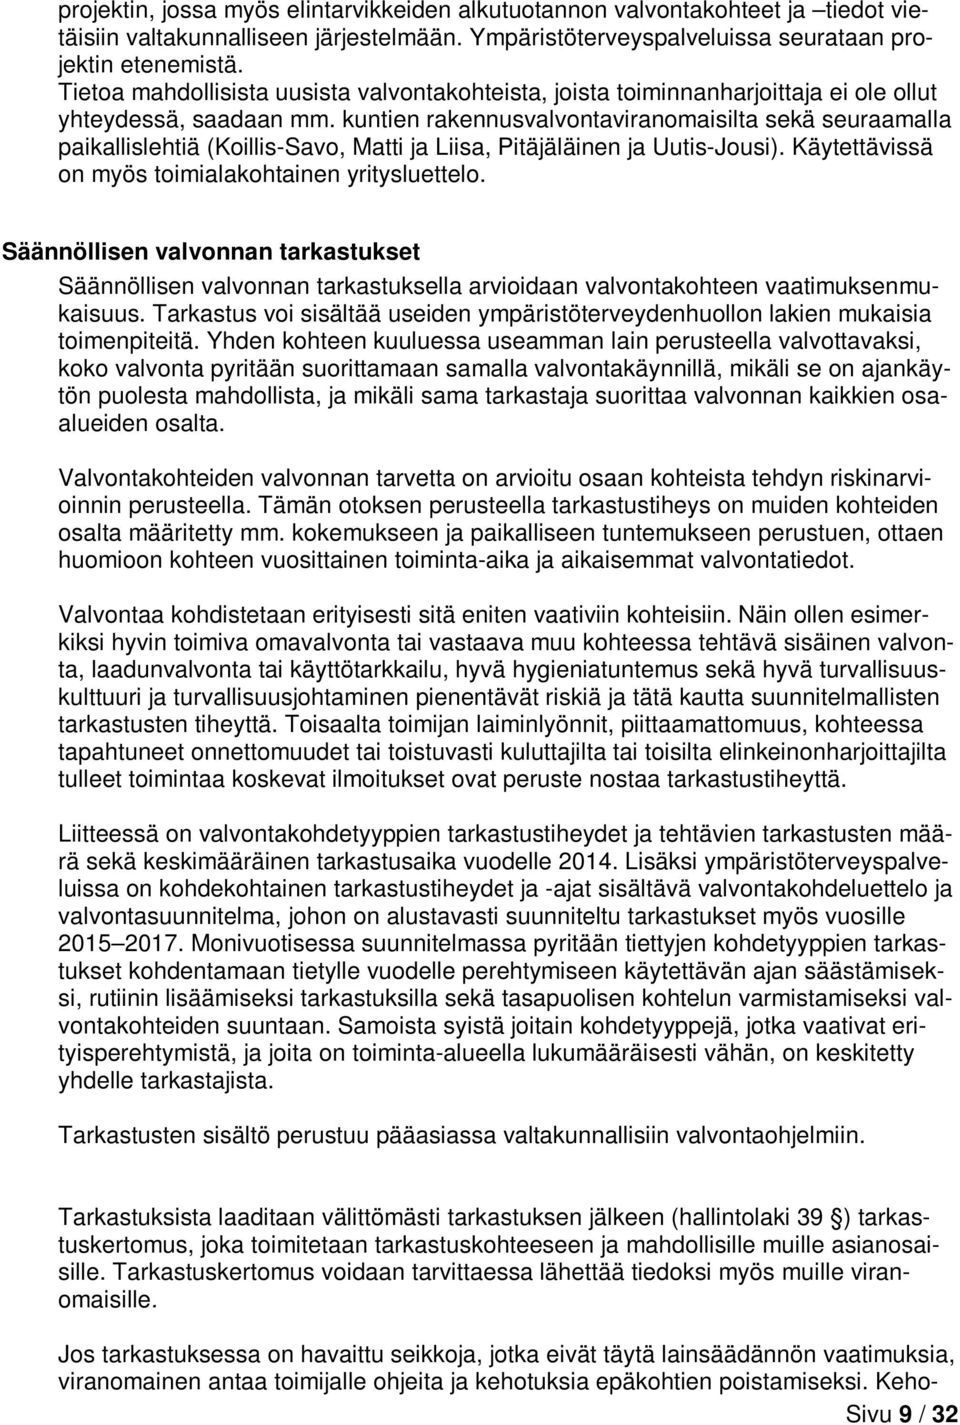 kuntien rakennusvalvontaviranomaisilta sekä seuraamalla paikallislehtiä (Koillis-Savo, Matti ja Liisa, Pitäjäläinen ja Uutis-Jousi). Käytettävissä on myös toimialakohtainen yritysluettelo.